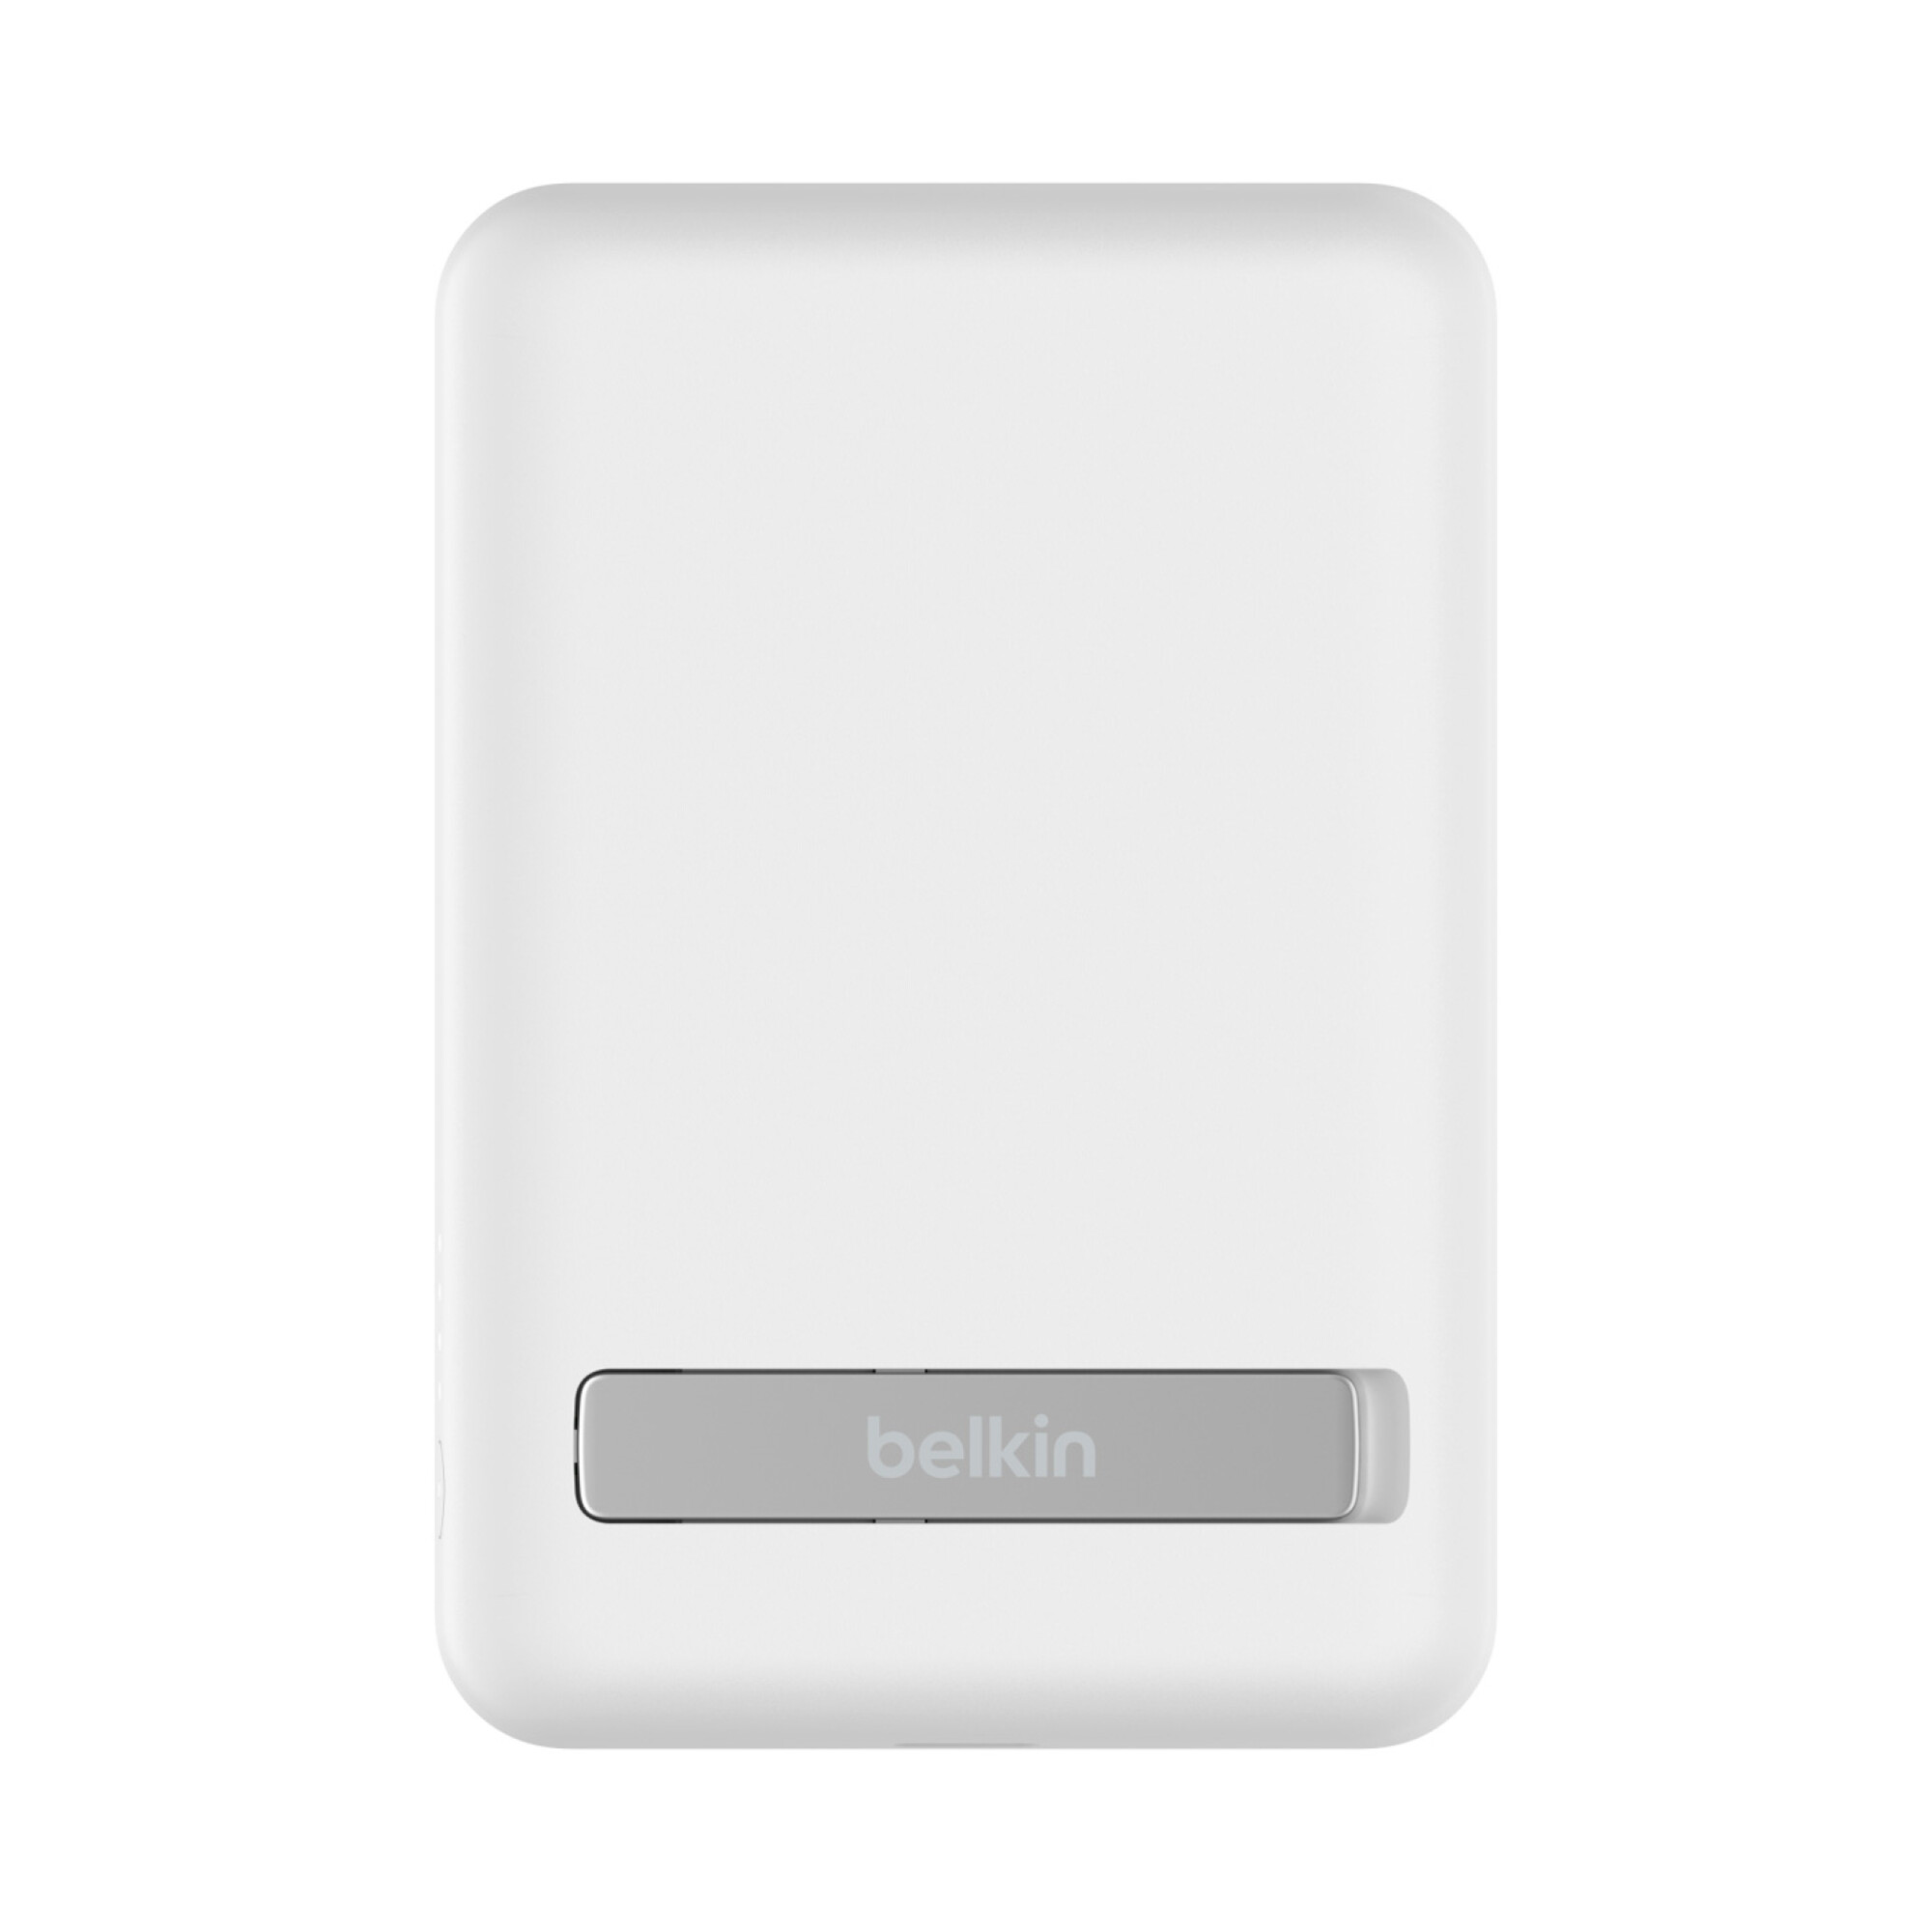 Power Bank Belkin 10.000 mAh carga rápida a 18 W compatible con